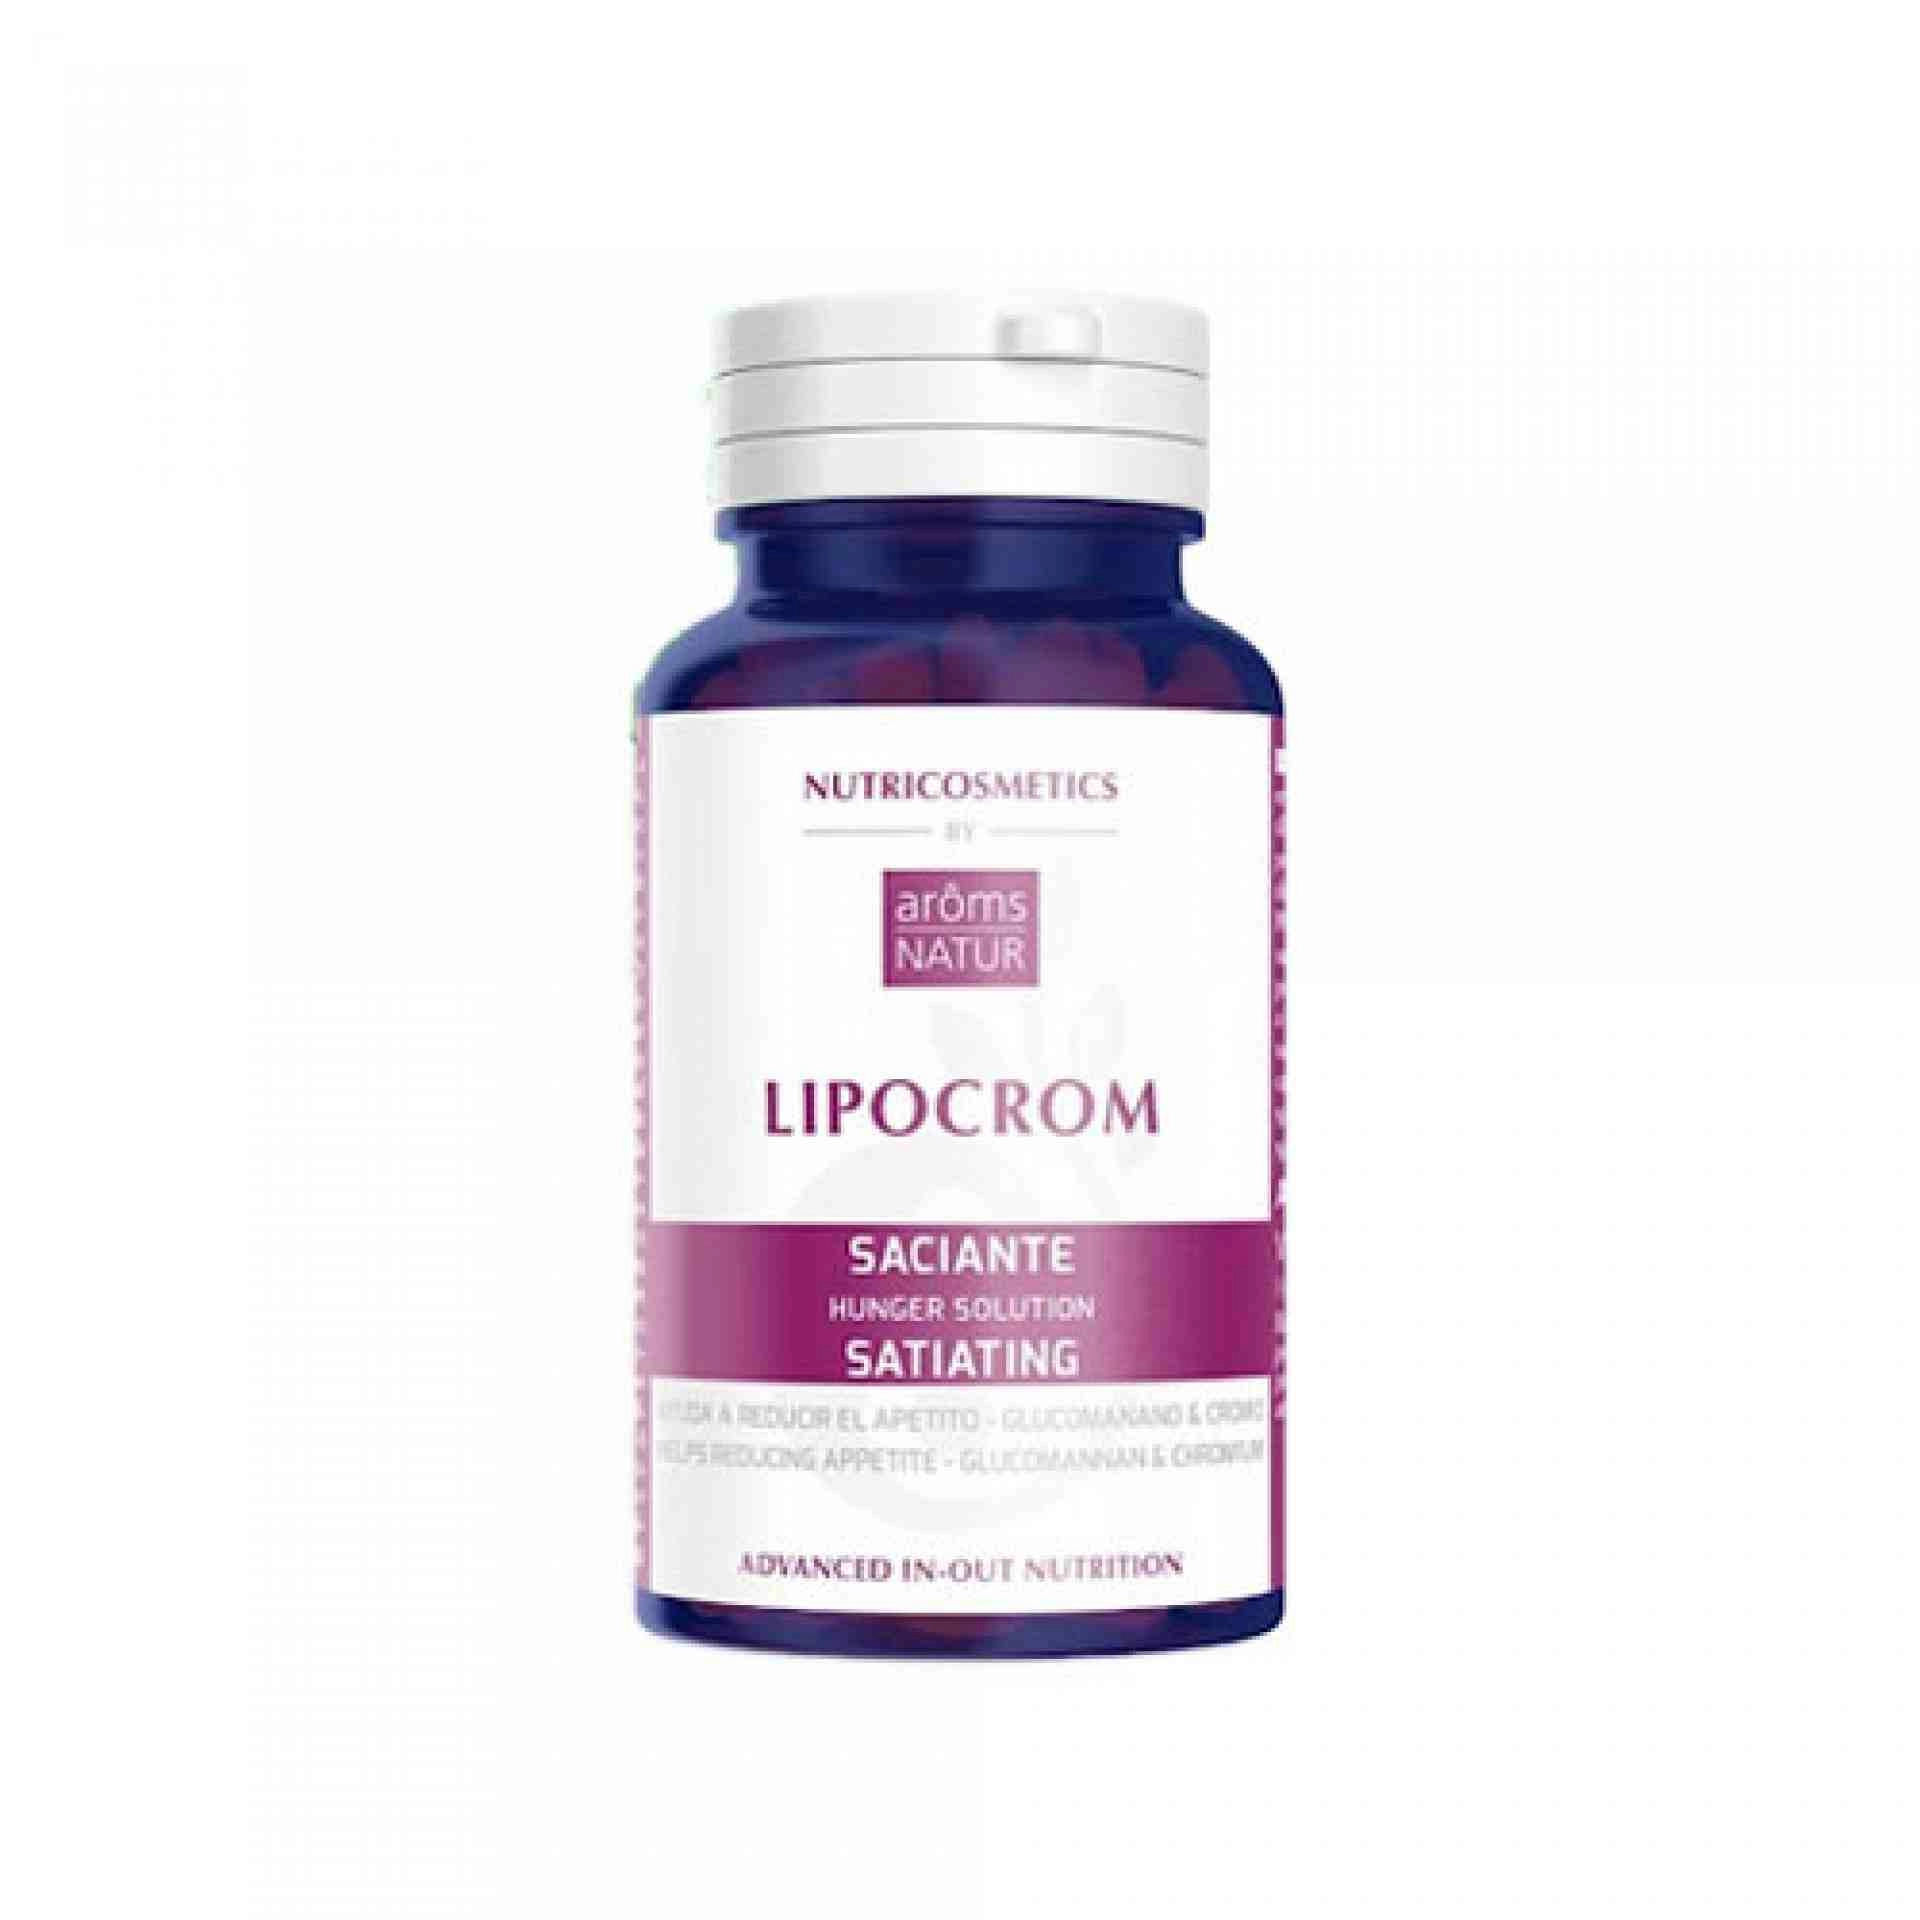 Lipocrom 60 Cápsulas | Regulador de Peso - Nutricosméticos - Arôms Natur ®